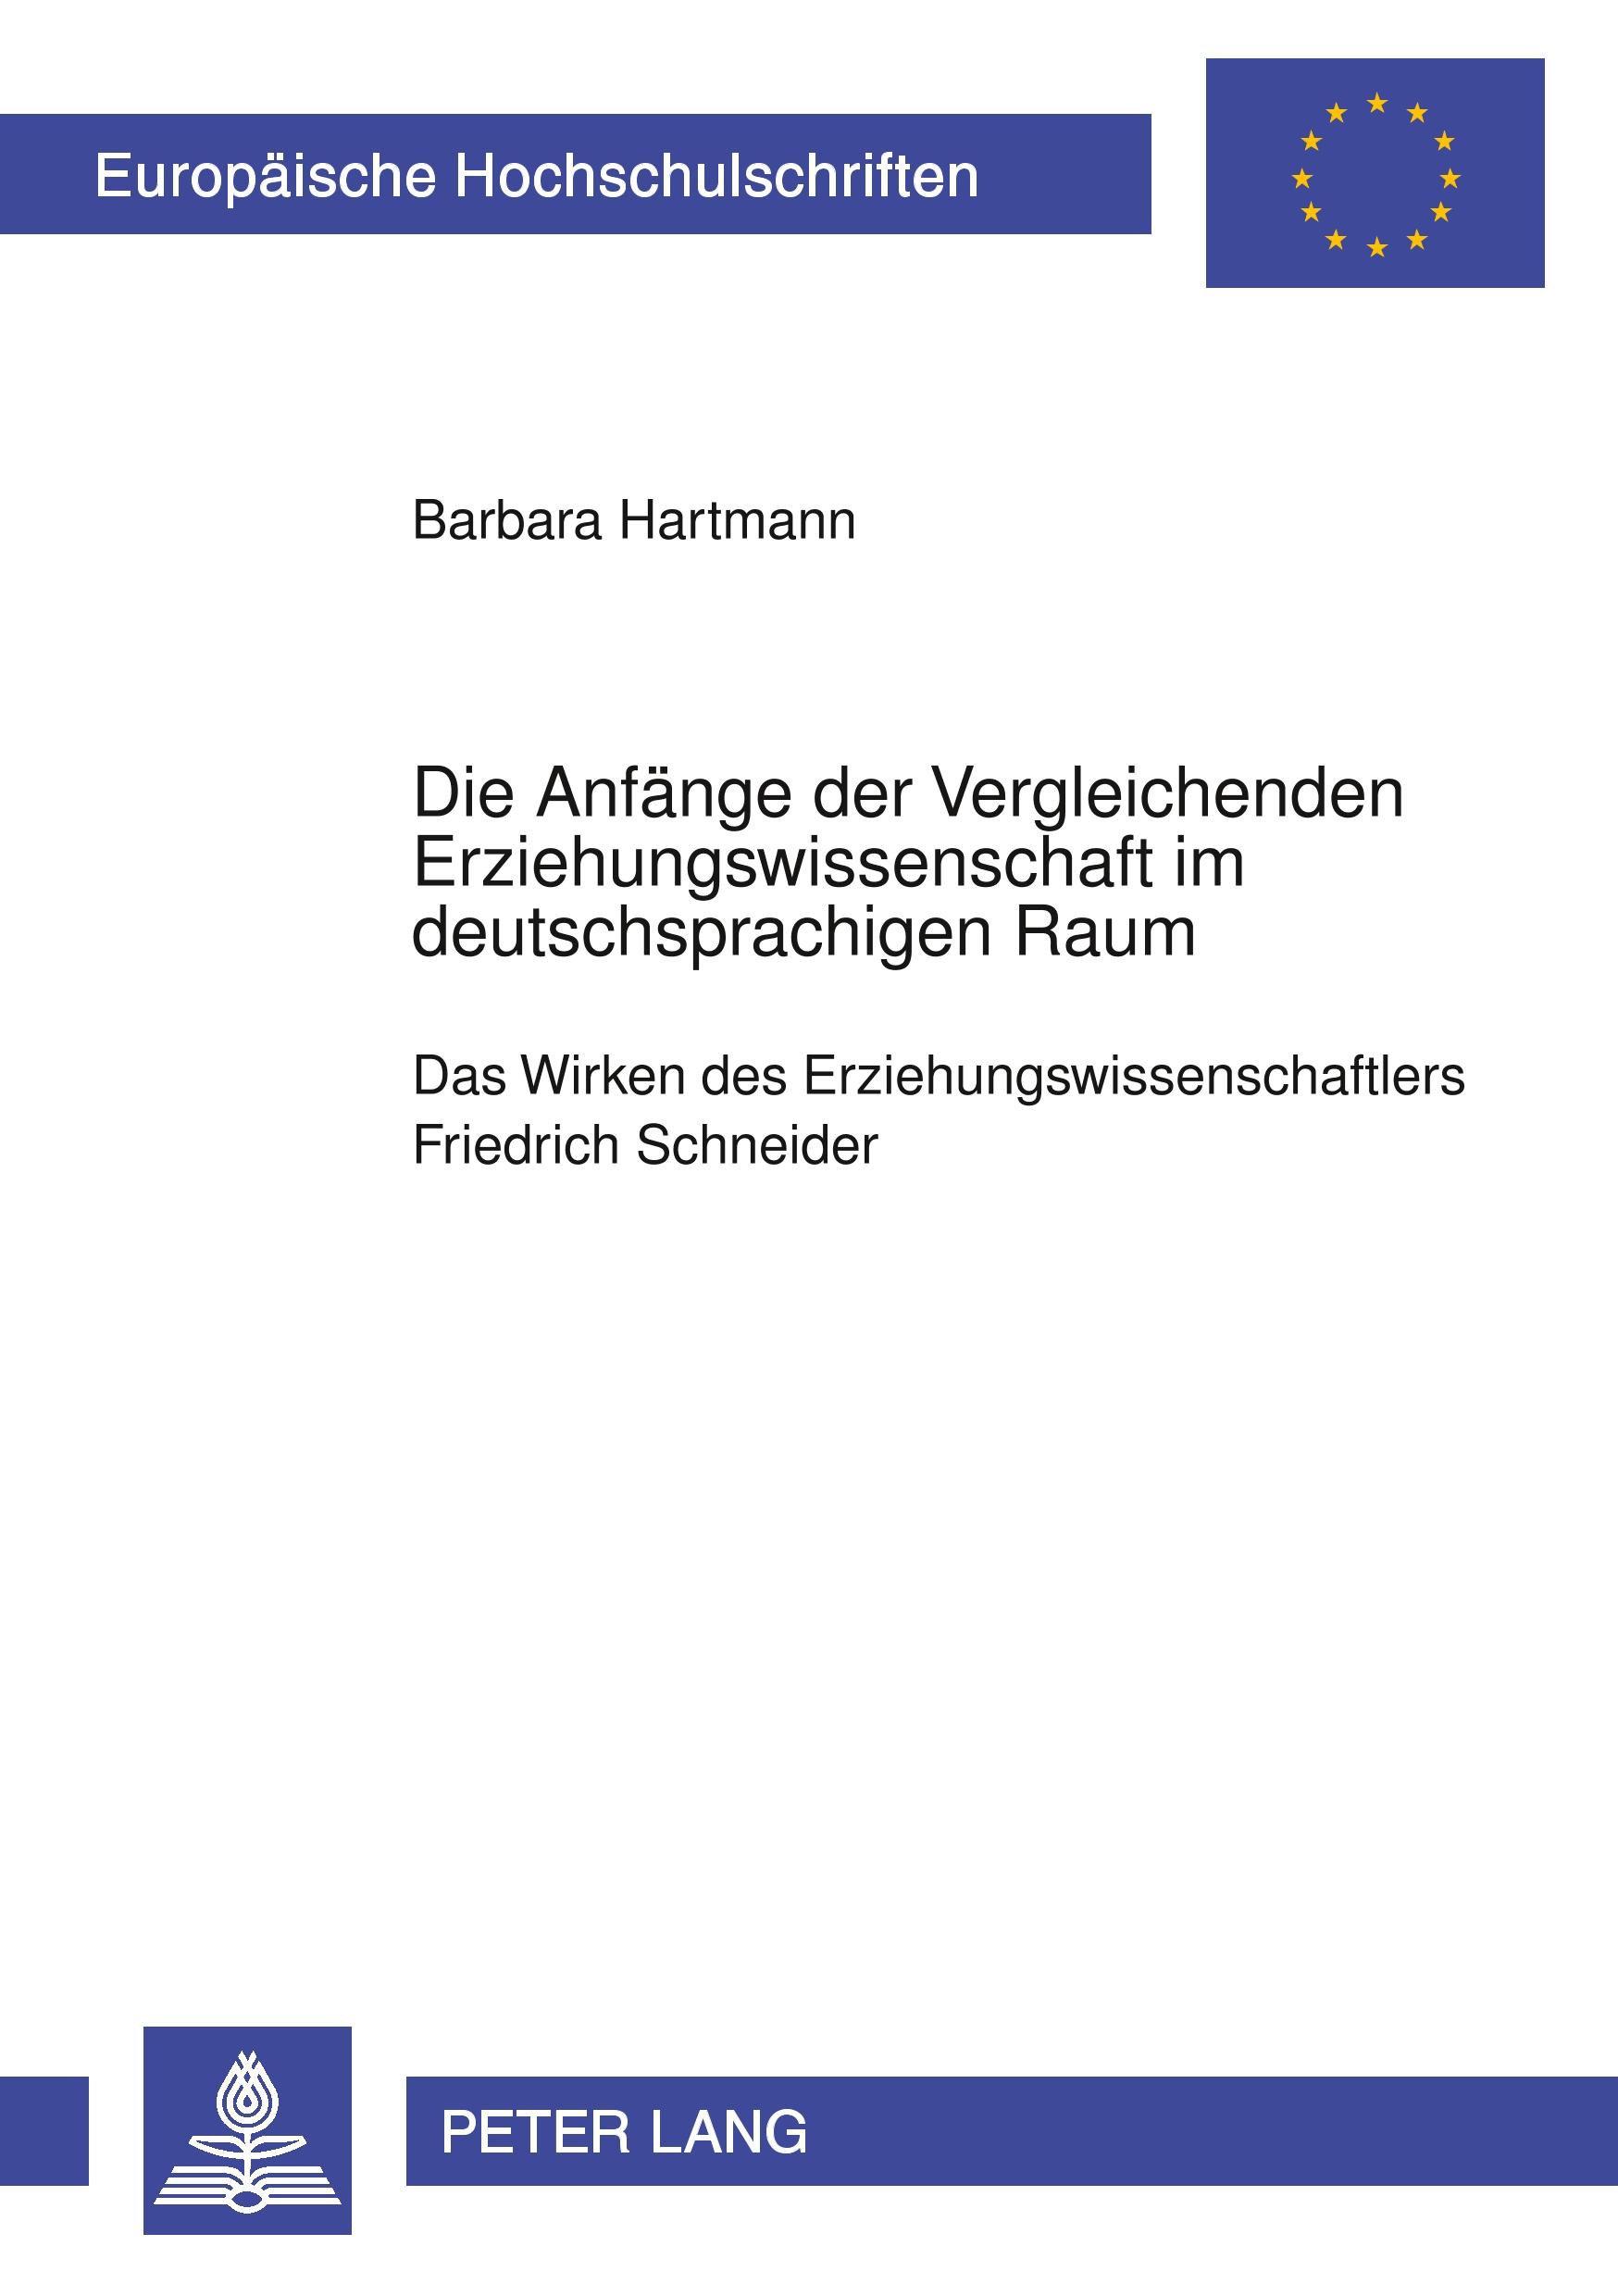 Die Anfaenge der Vergleichenden Erziehungswissenschaft im deutschsprachigen Raum - Bous, Barbara